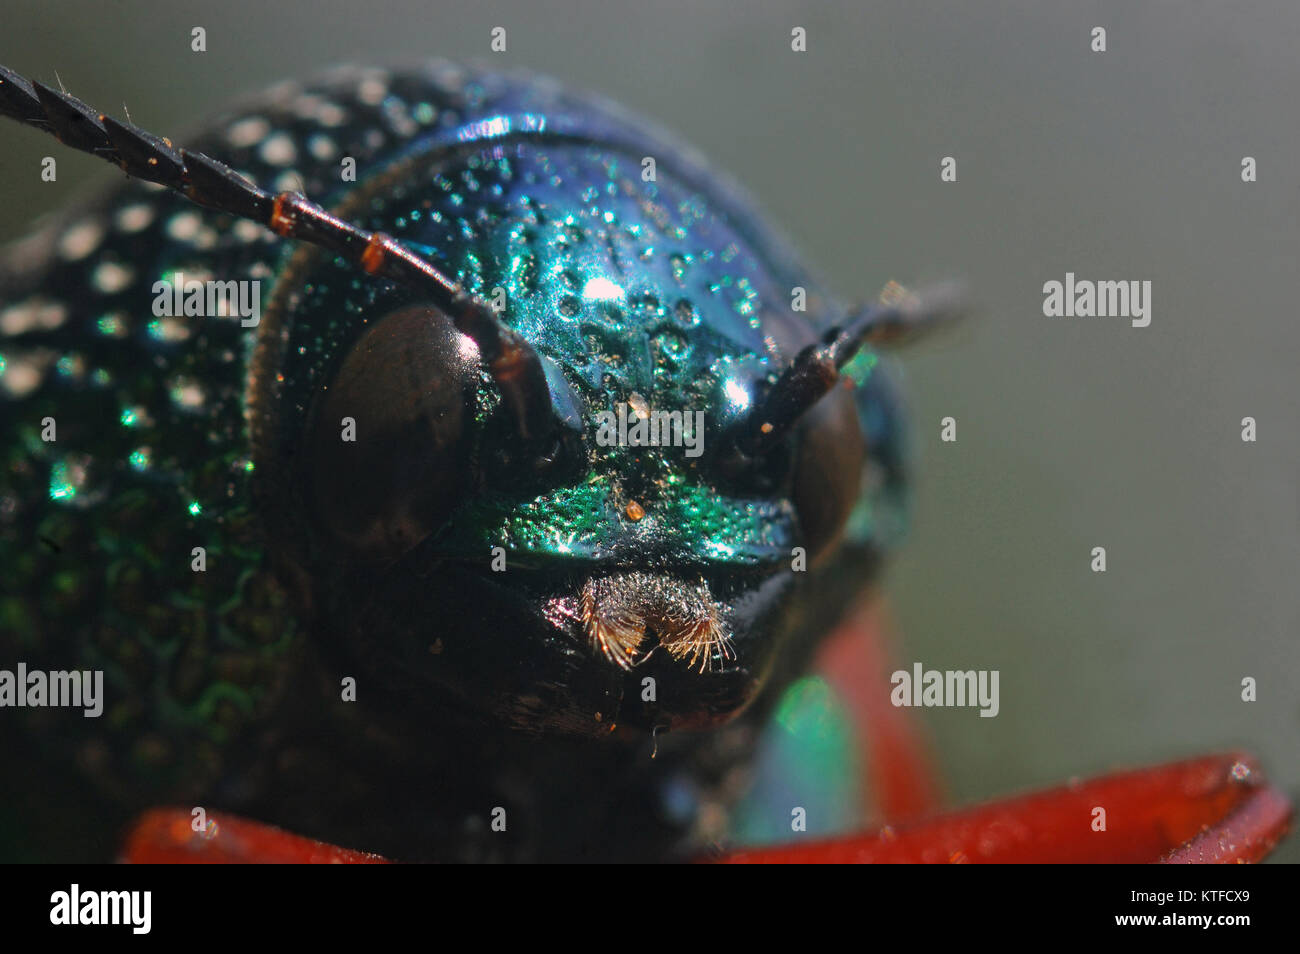 Porträt einer jewel Beetle von Familie Buprestidae, möglicherweise Sternocera nitens oder S. Brahmina, aus Tamil Nadu, Südindien Stockfoto